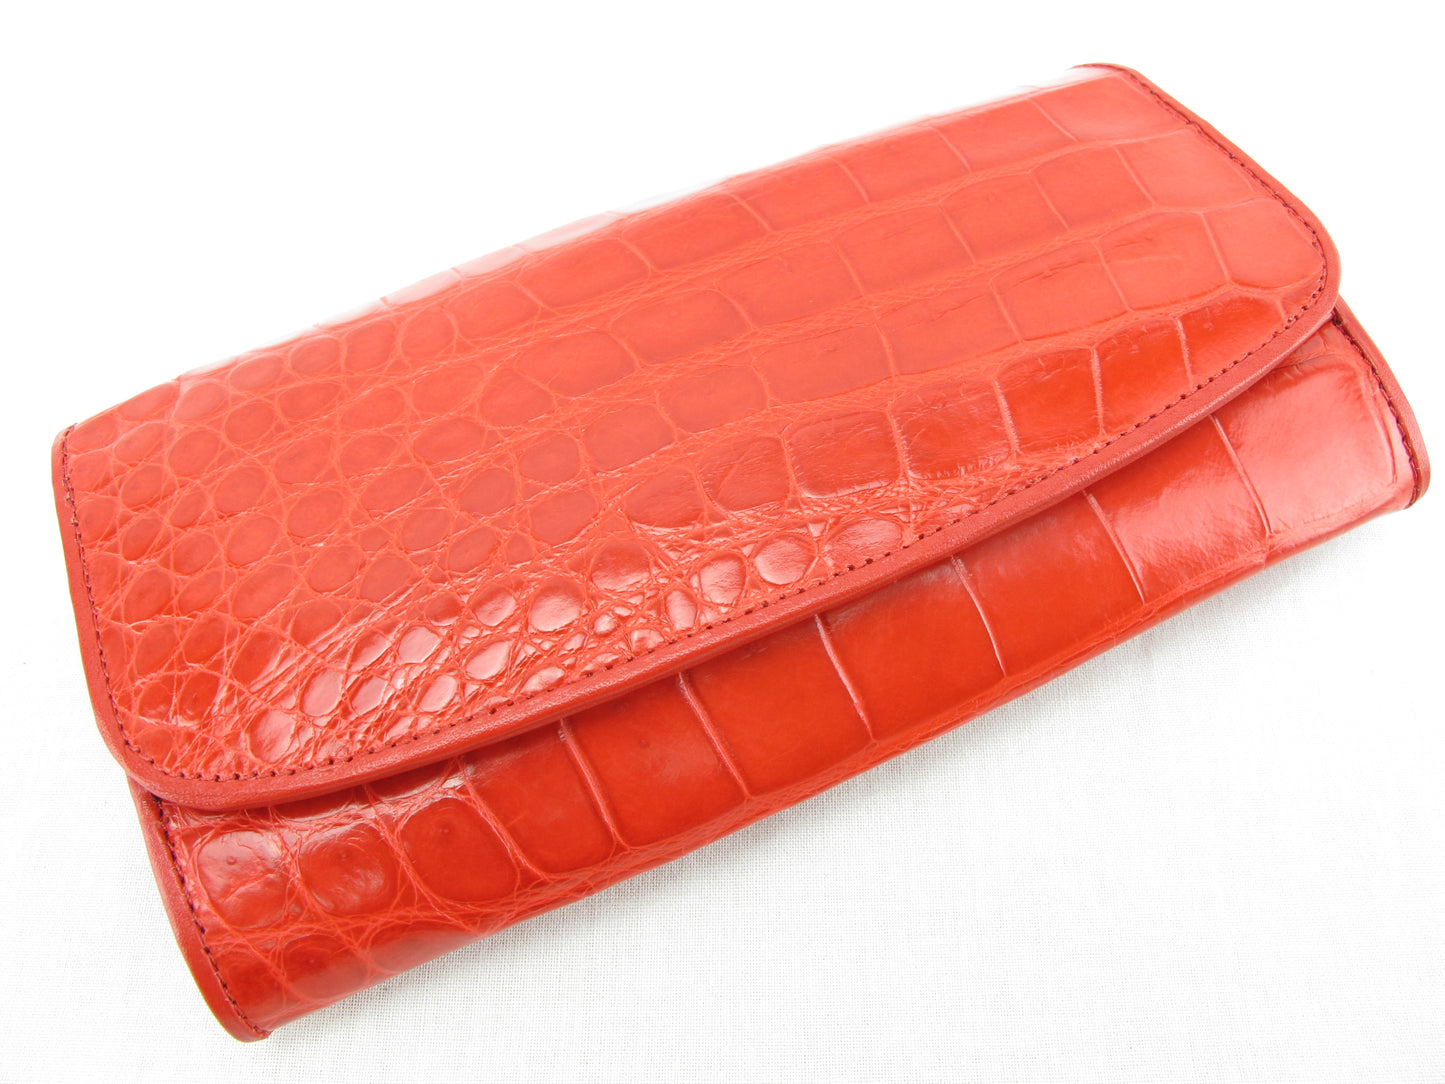 Genuine Crocodile Belly Skin Leather Women's Trifold Clutch Wallet Purse